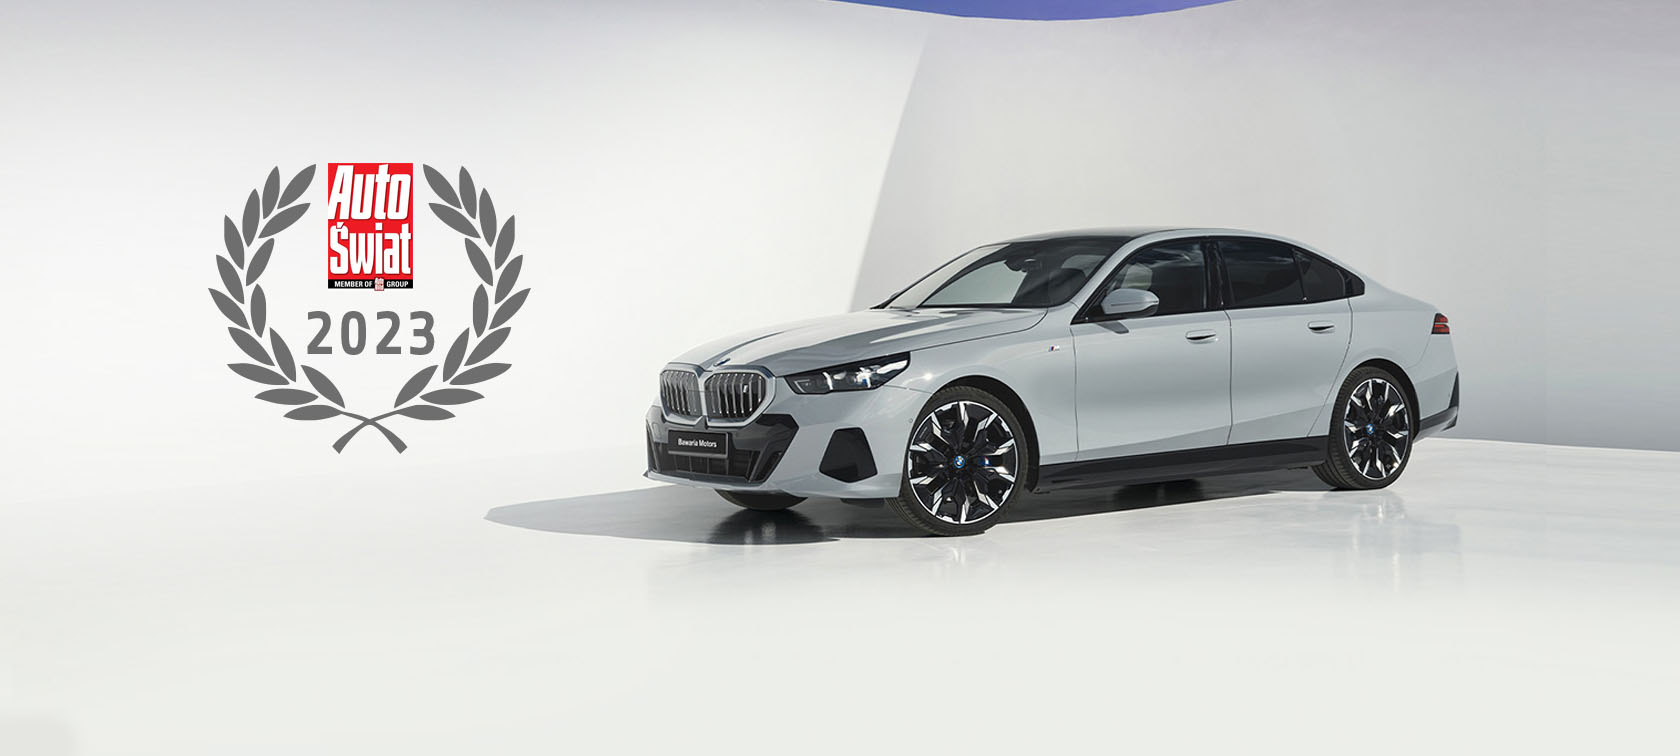 Wielki Test Salonów 2023 Auto Świat. - Bawaria Motors z najlepszym wynikiem salonów BMW i MINI.